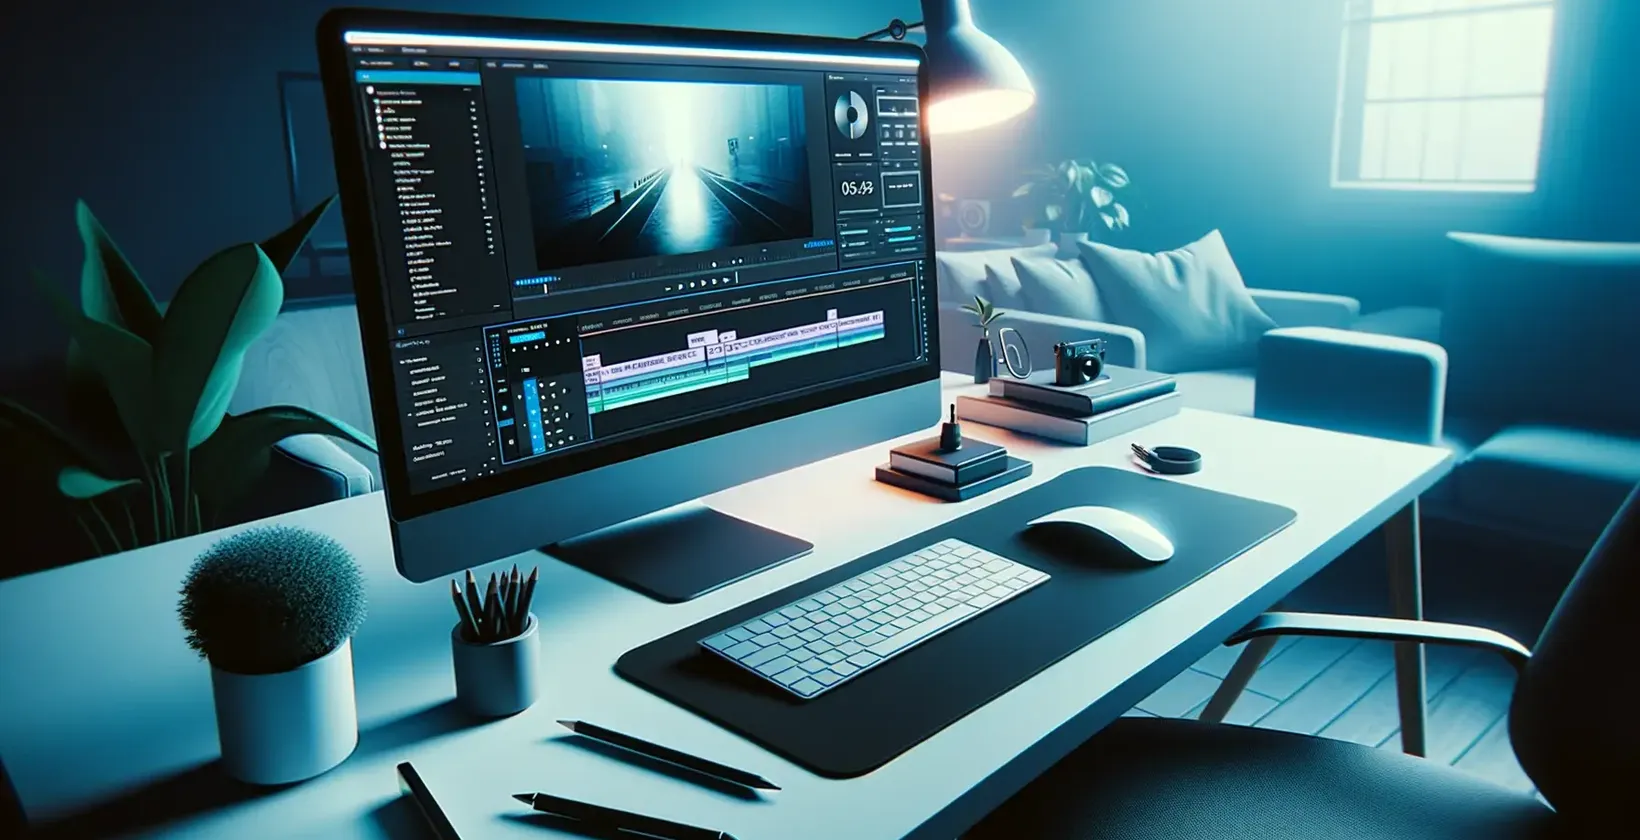 Thêm văn bản vào video với Adobe After Effects được minh họa bằng không gian làm việc chỉnh sửa đẹp mắt với ánh sáng xanh lam